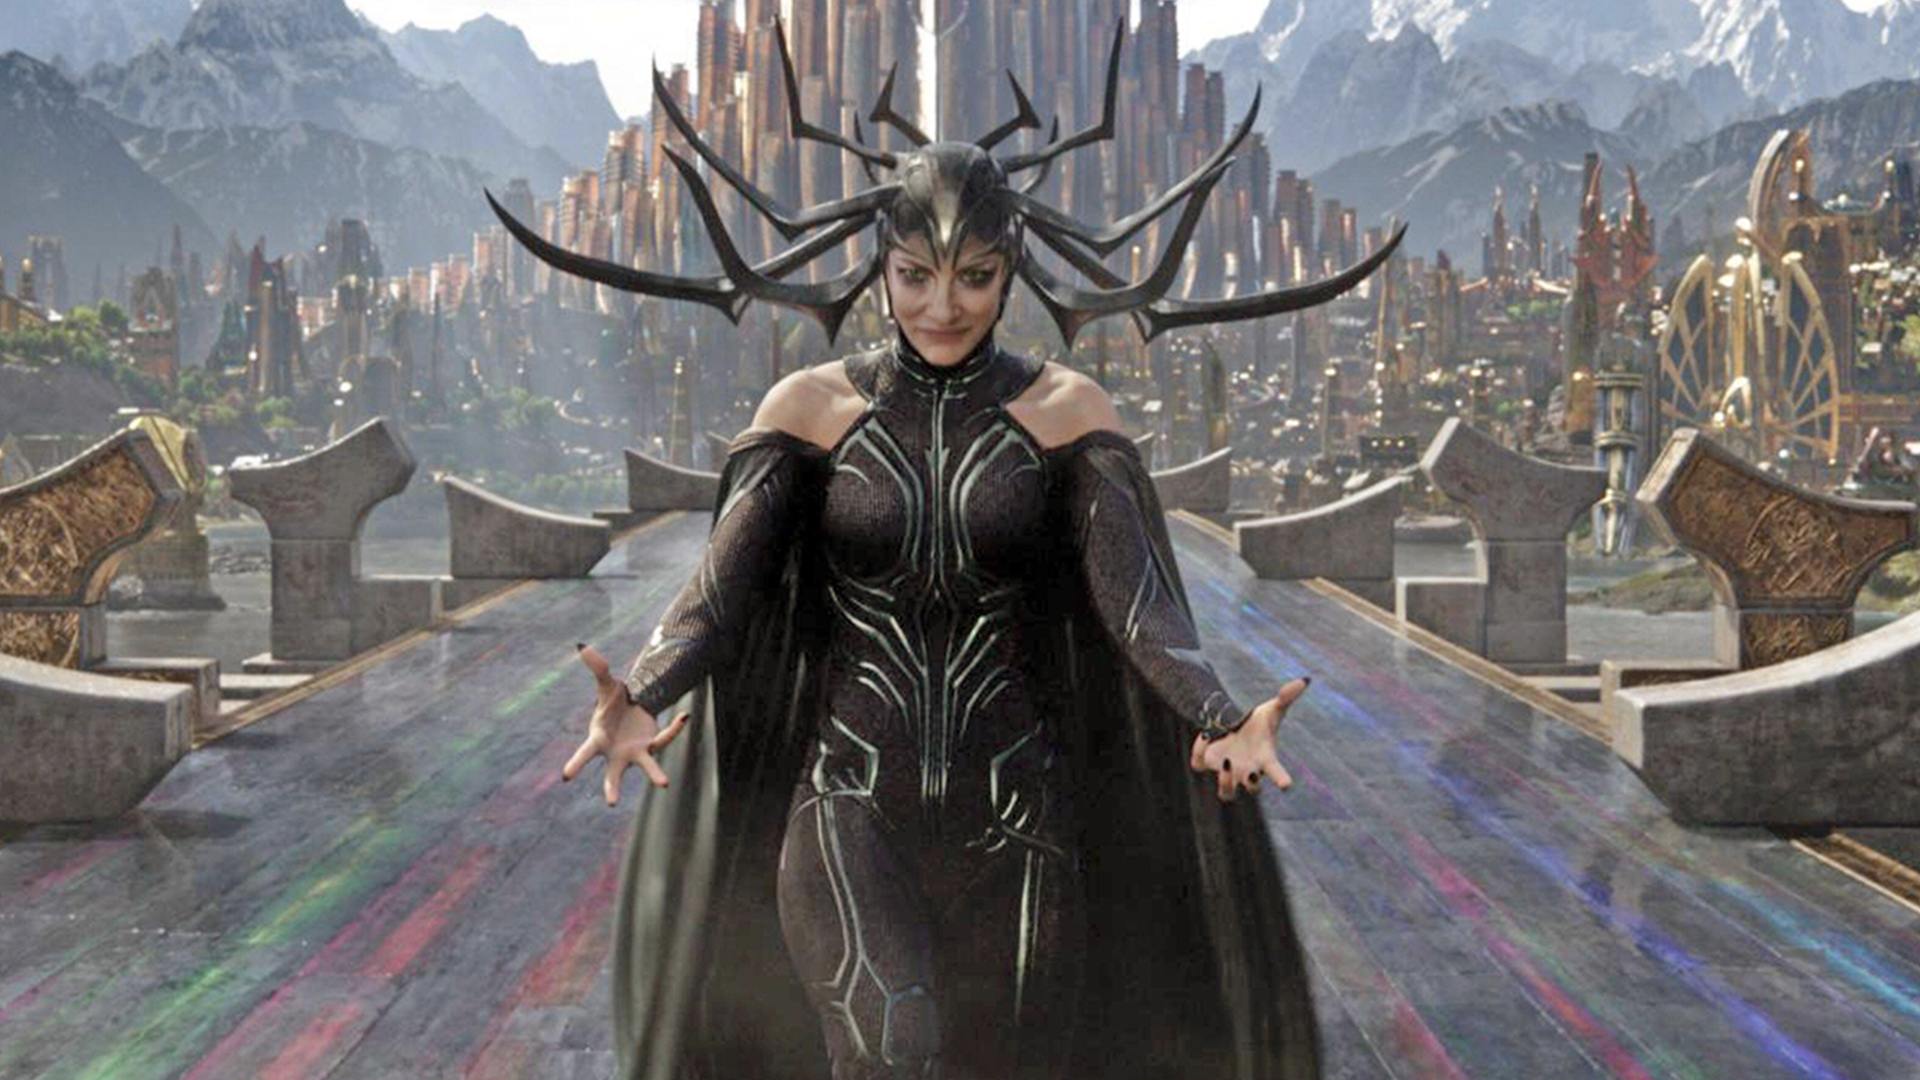 Hela from Thor: Ragnarok